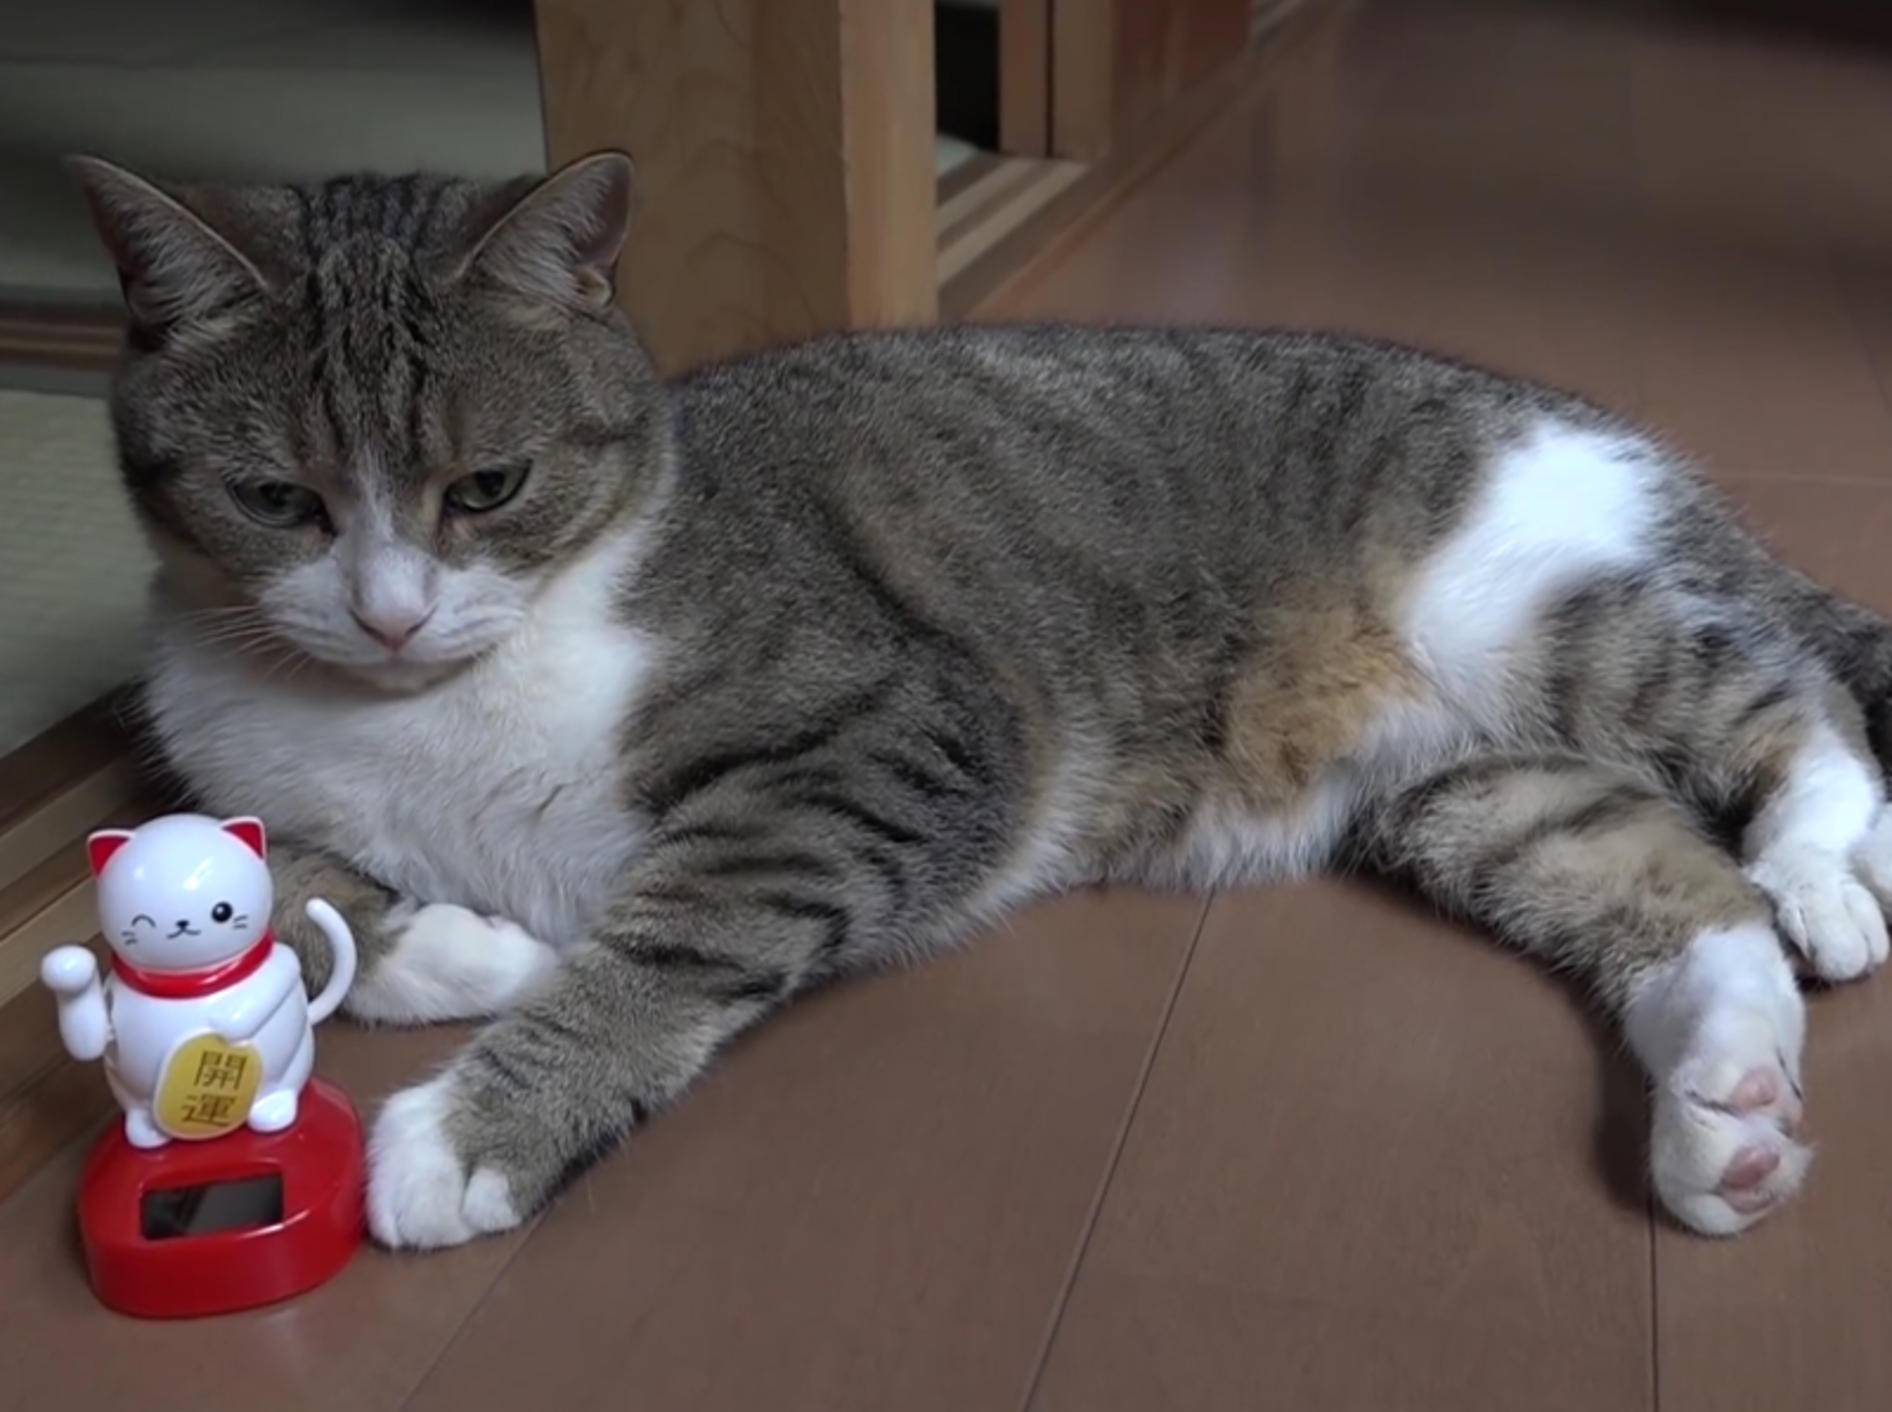 Katze Taro mag ihre Winkekatze – YouTube / 10 Cats